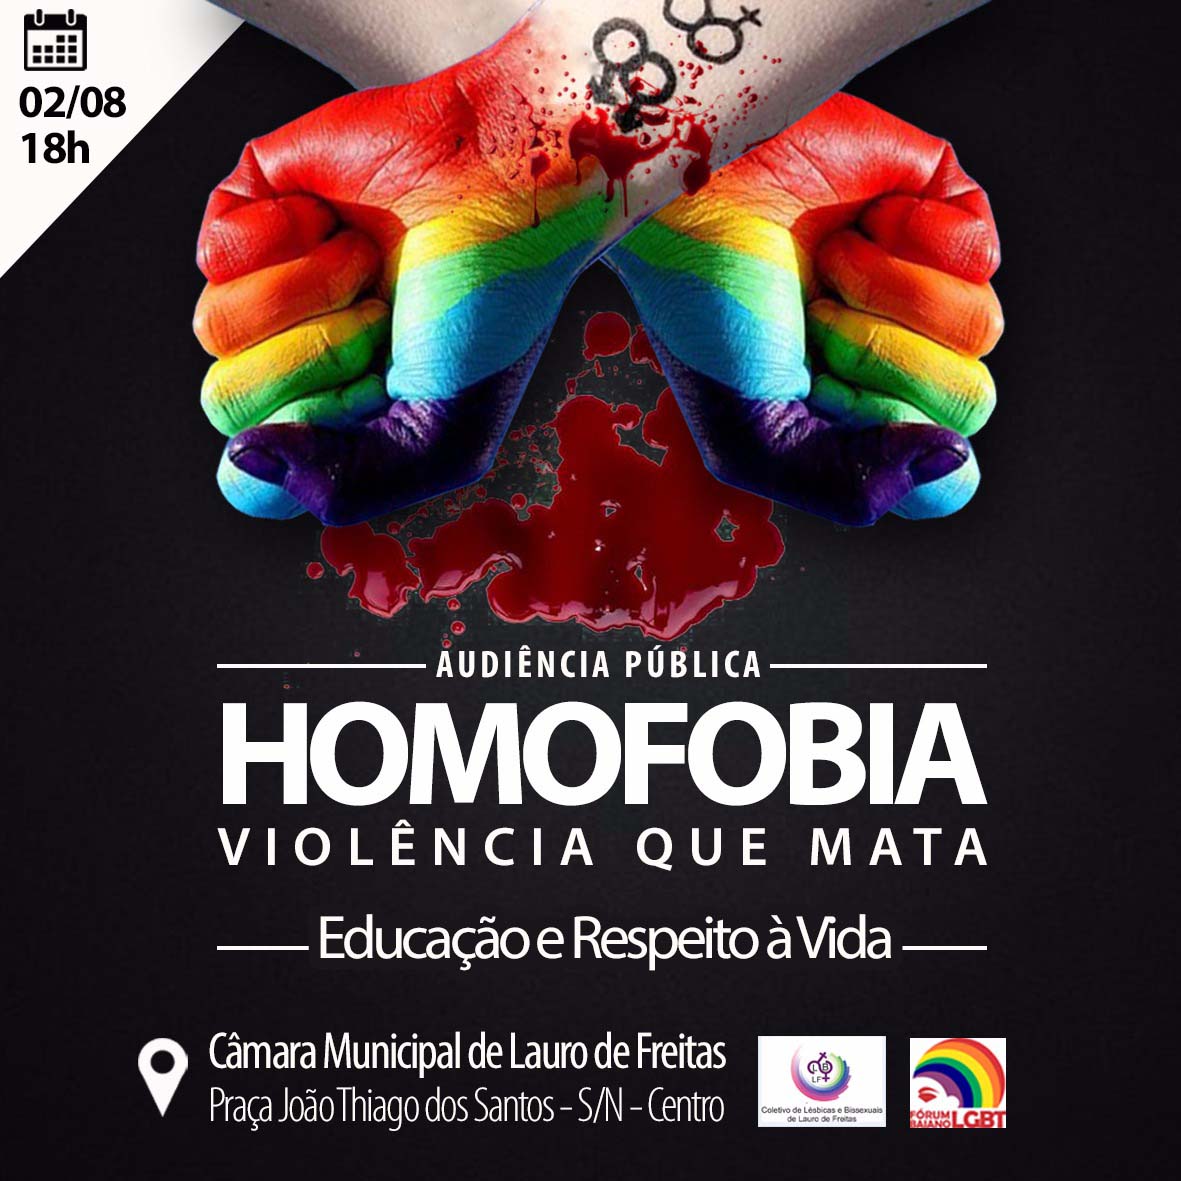 http://www.uol/eleicoes/especiais/cidade-para-os-lgbt.htm#criminalizacao-da-homofobia